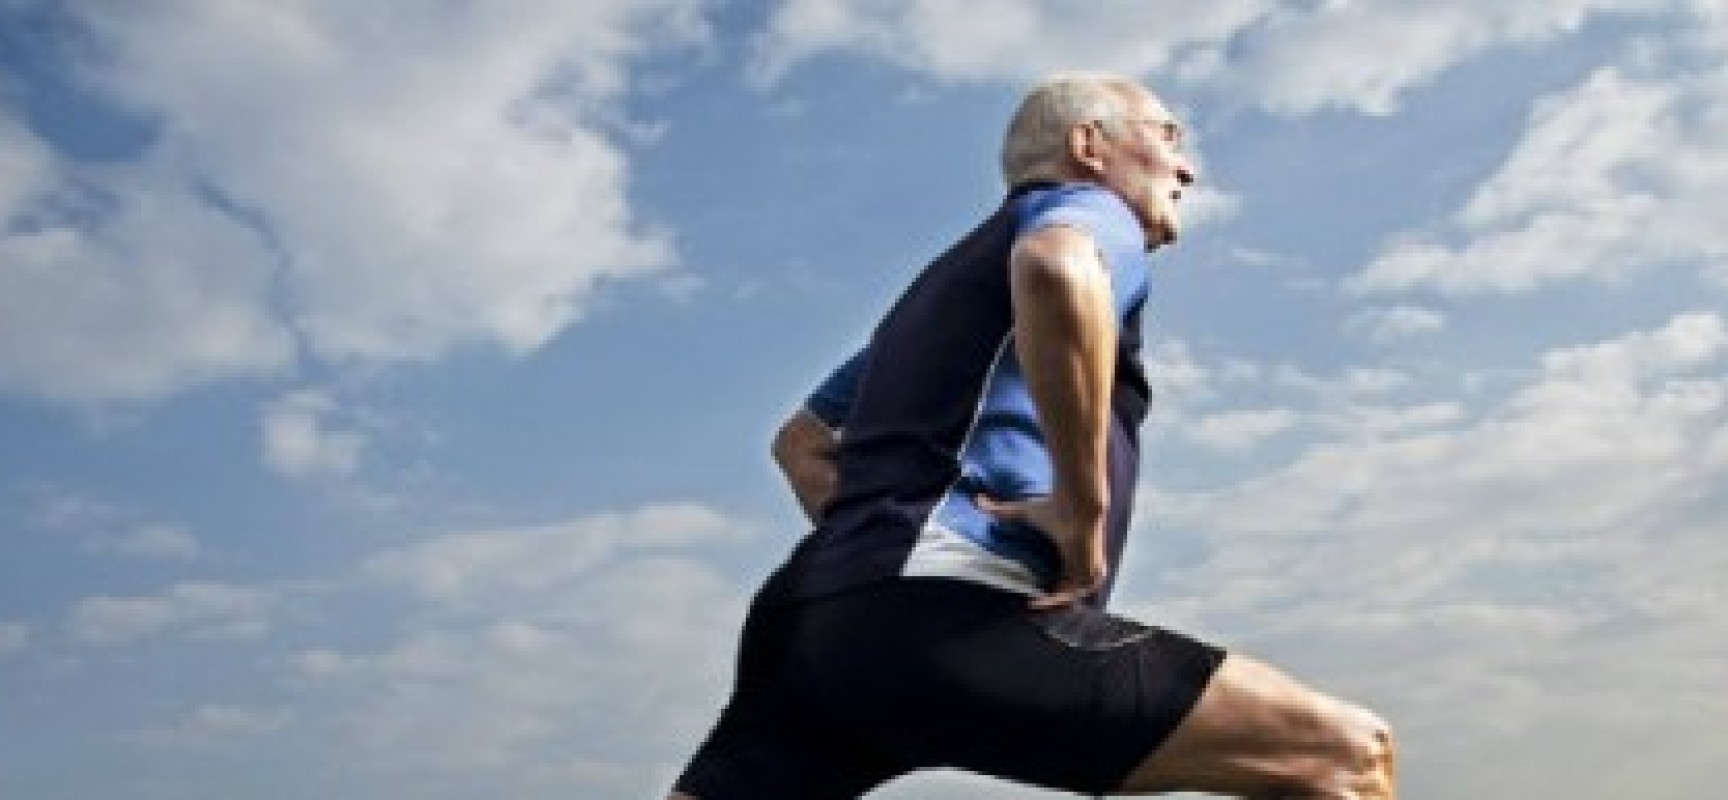 Estudo aponta três melhores esportes para prevenir infarto